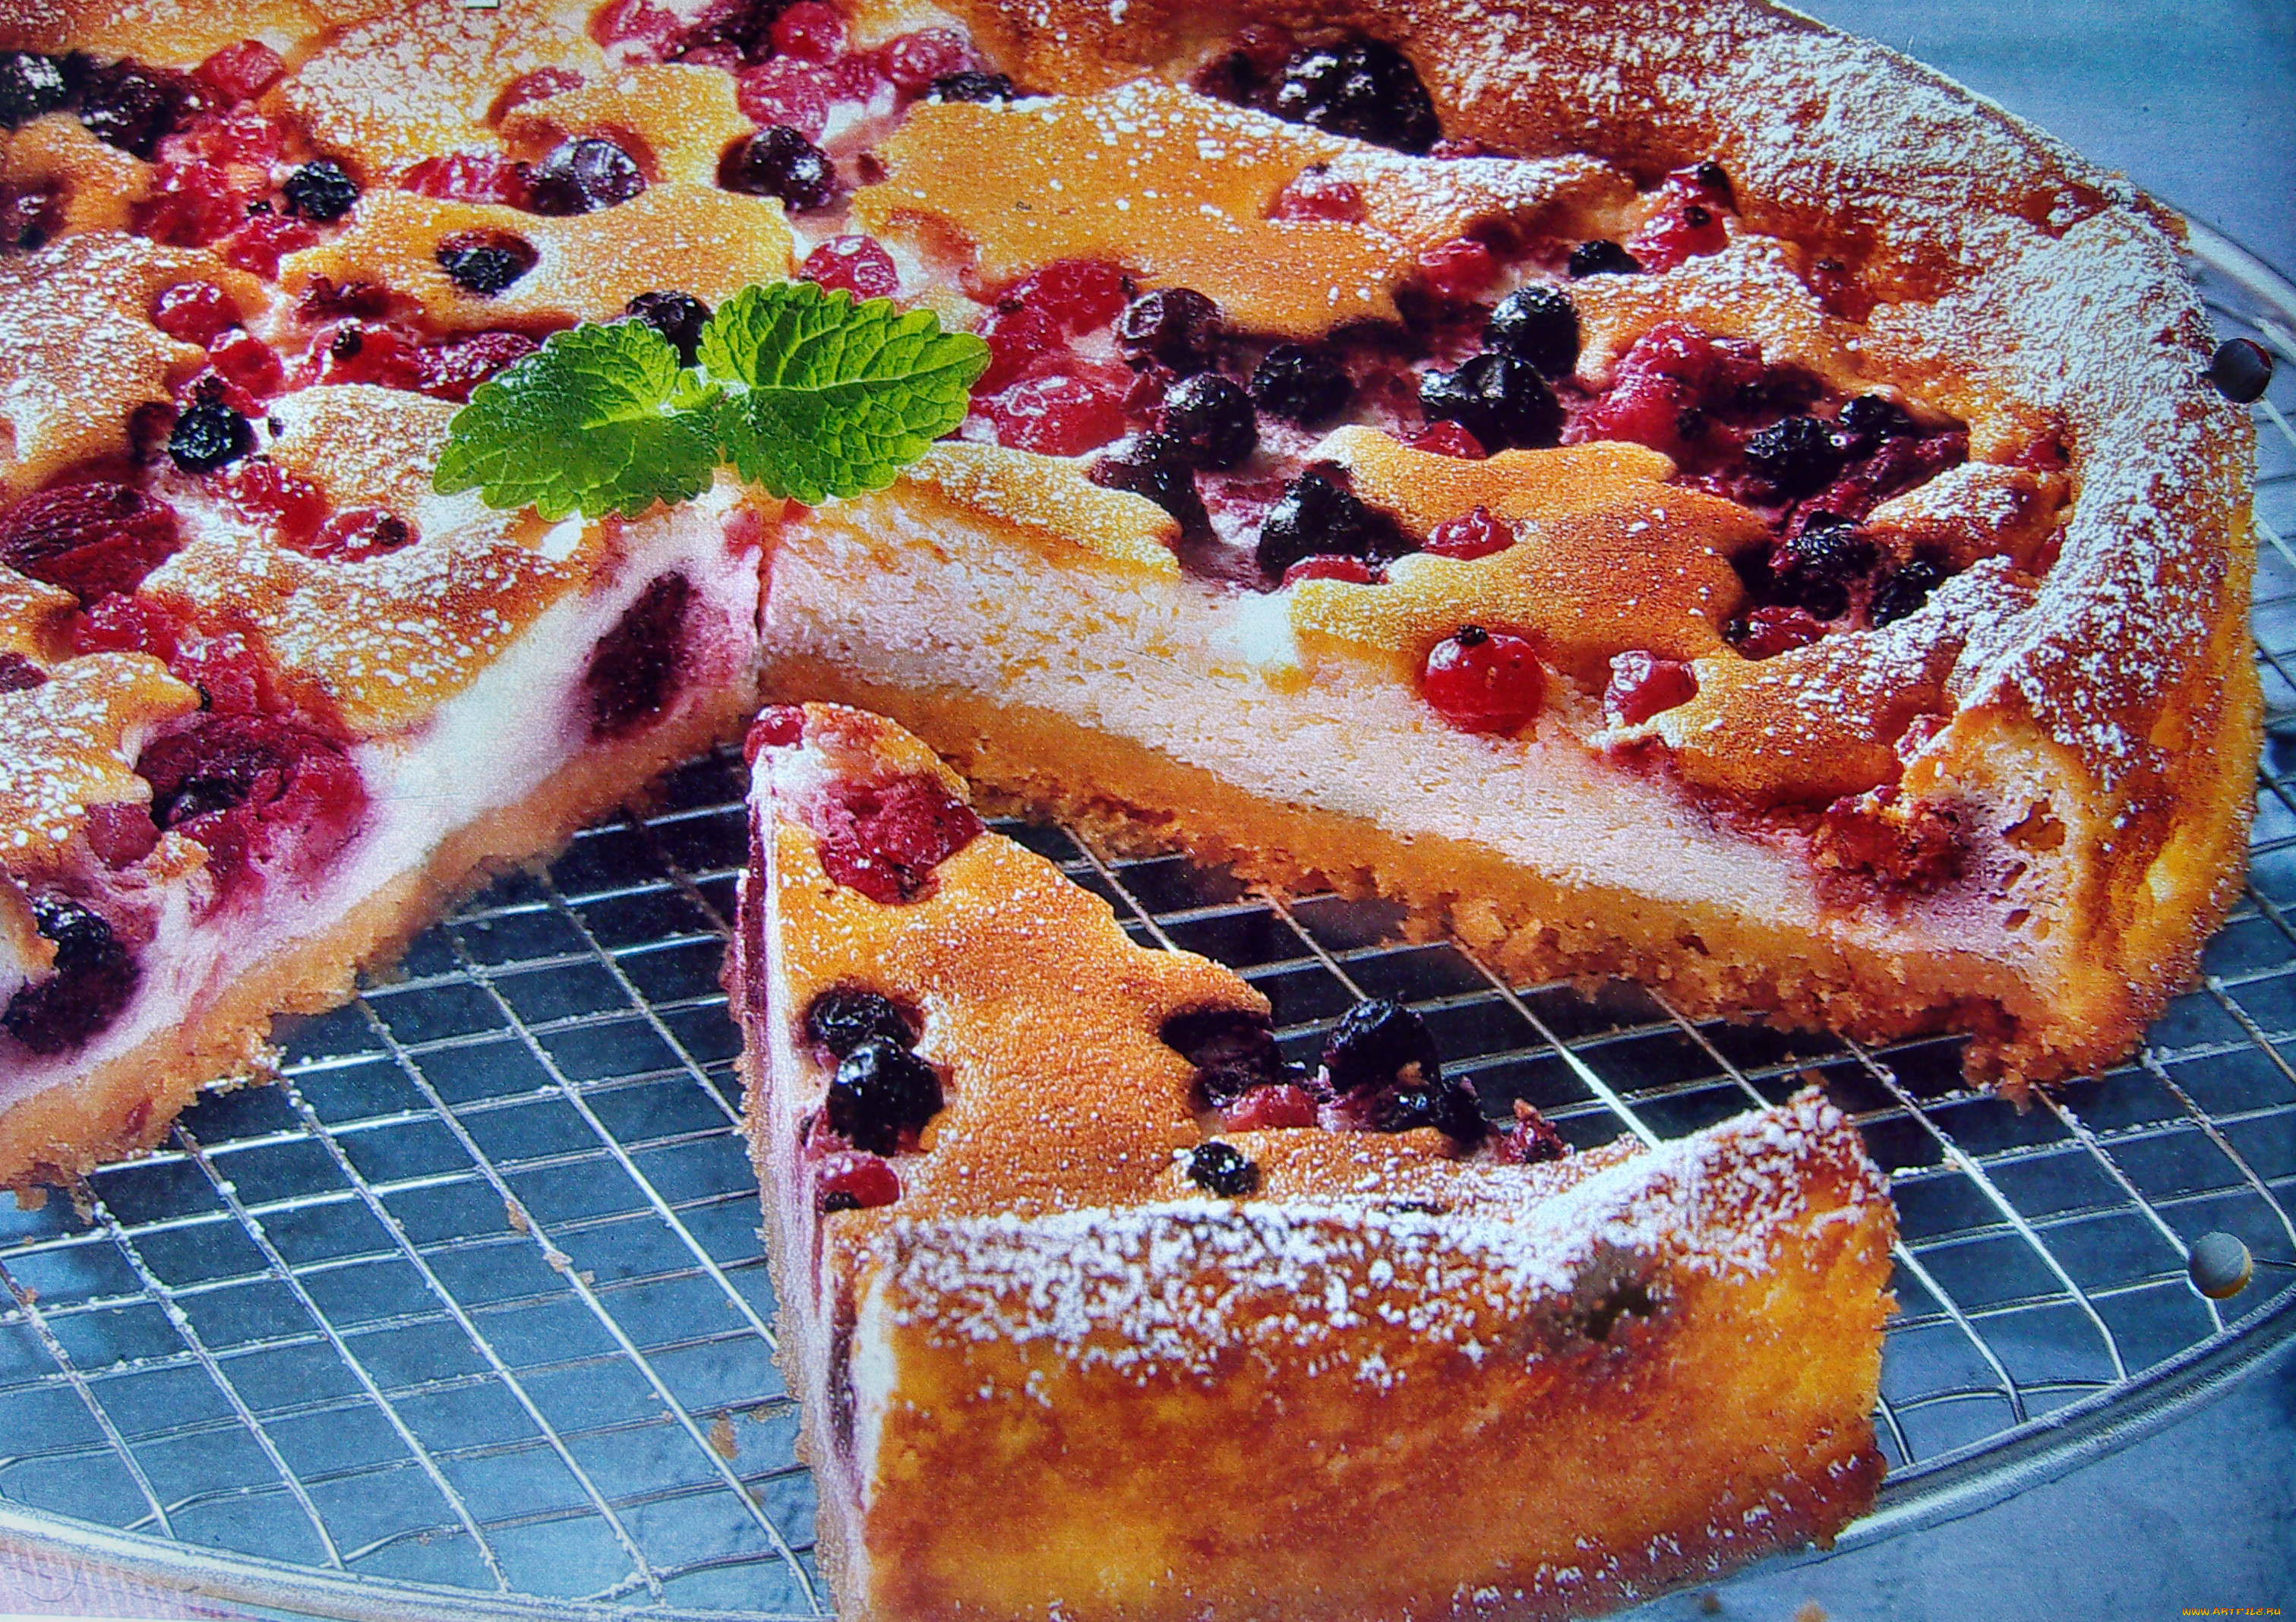 Пирог с ягодами с маслом. Пирог с творогом и ягодами. Творожный пирог с ягодами. Творожный пирог с фруктами. Кусок творожного пирога с ягодами.